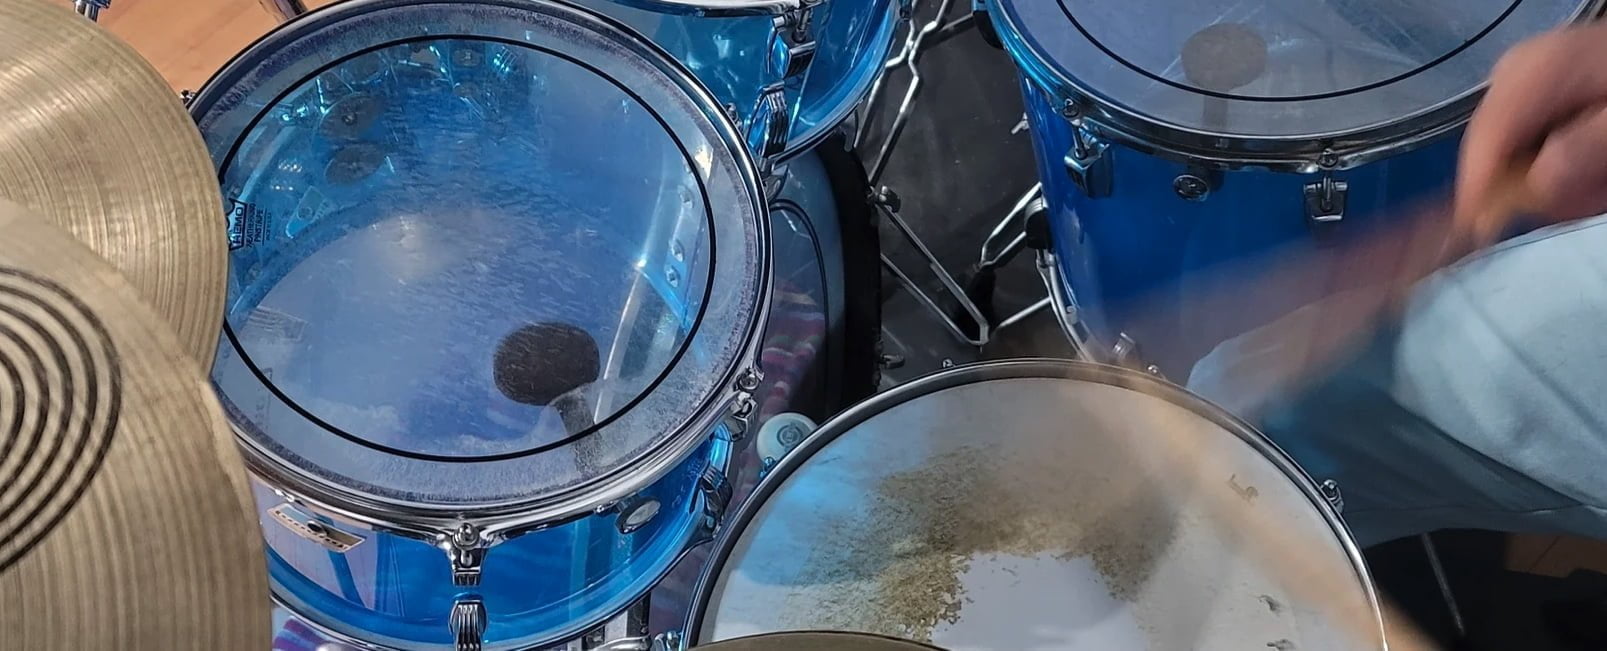 STUDIO Drums.co